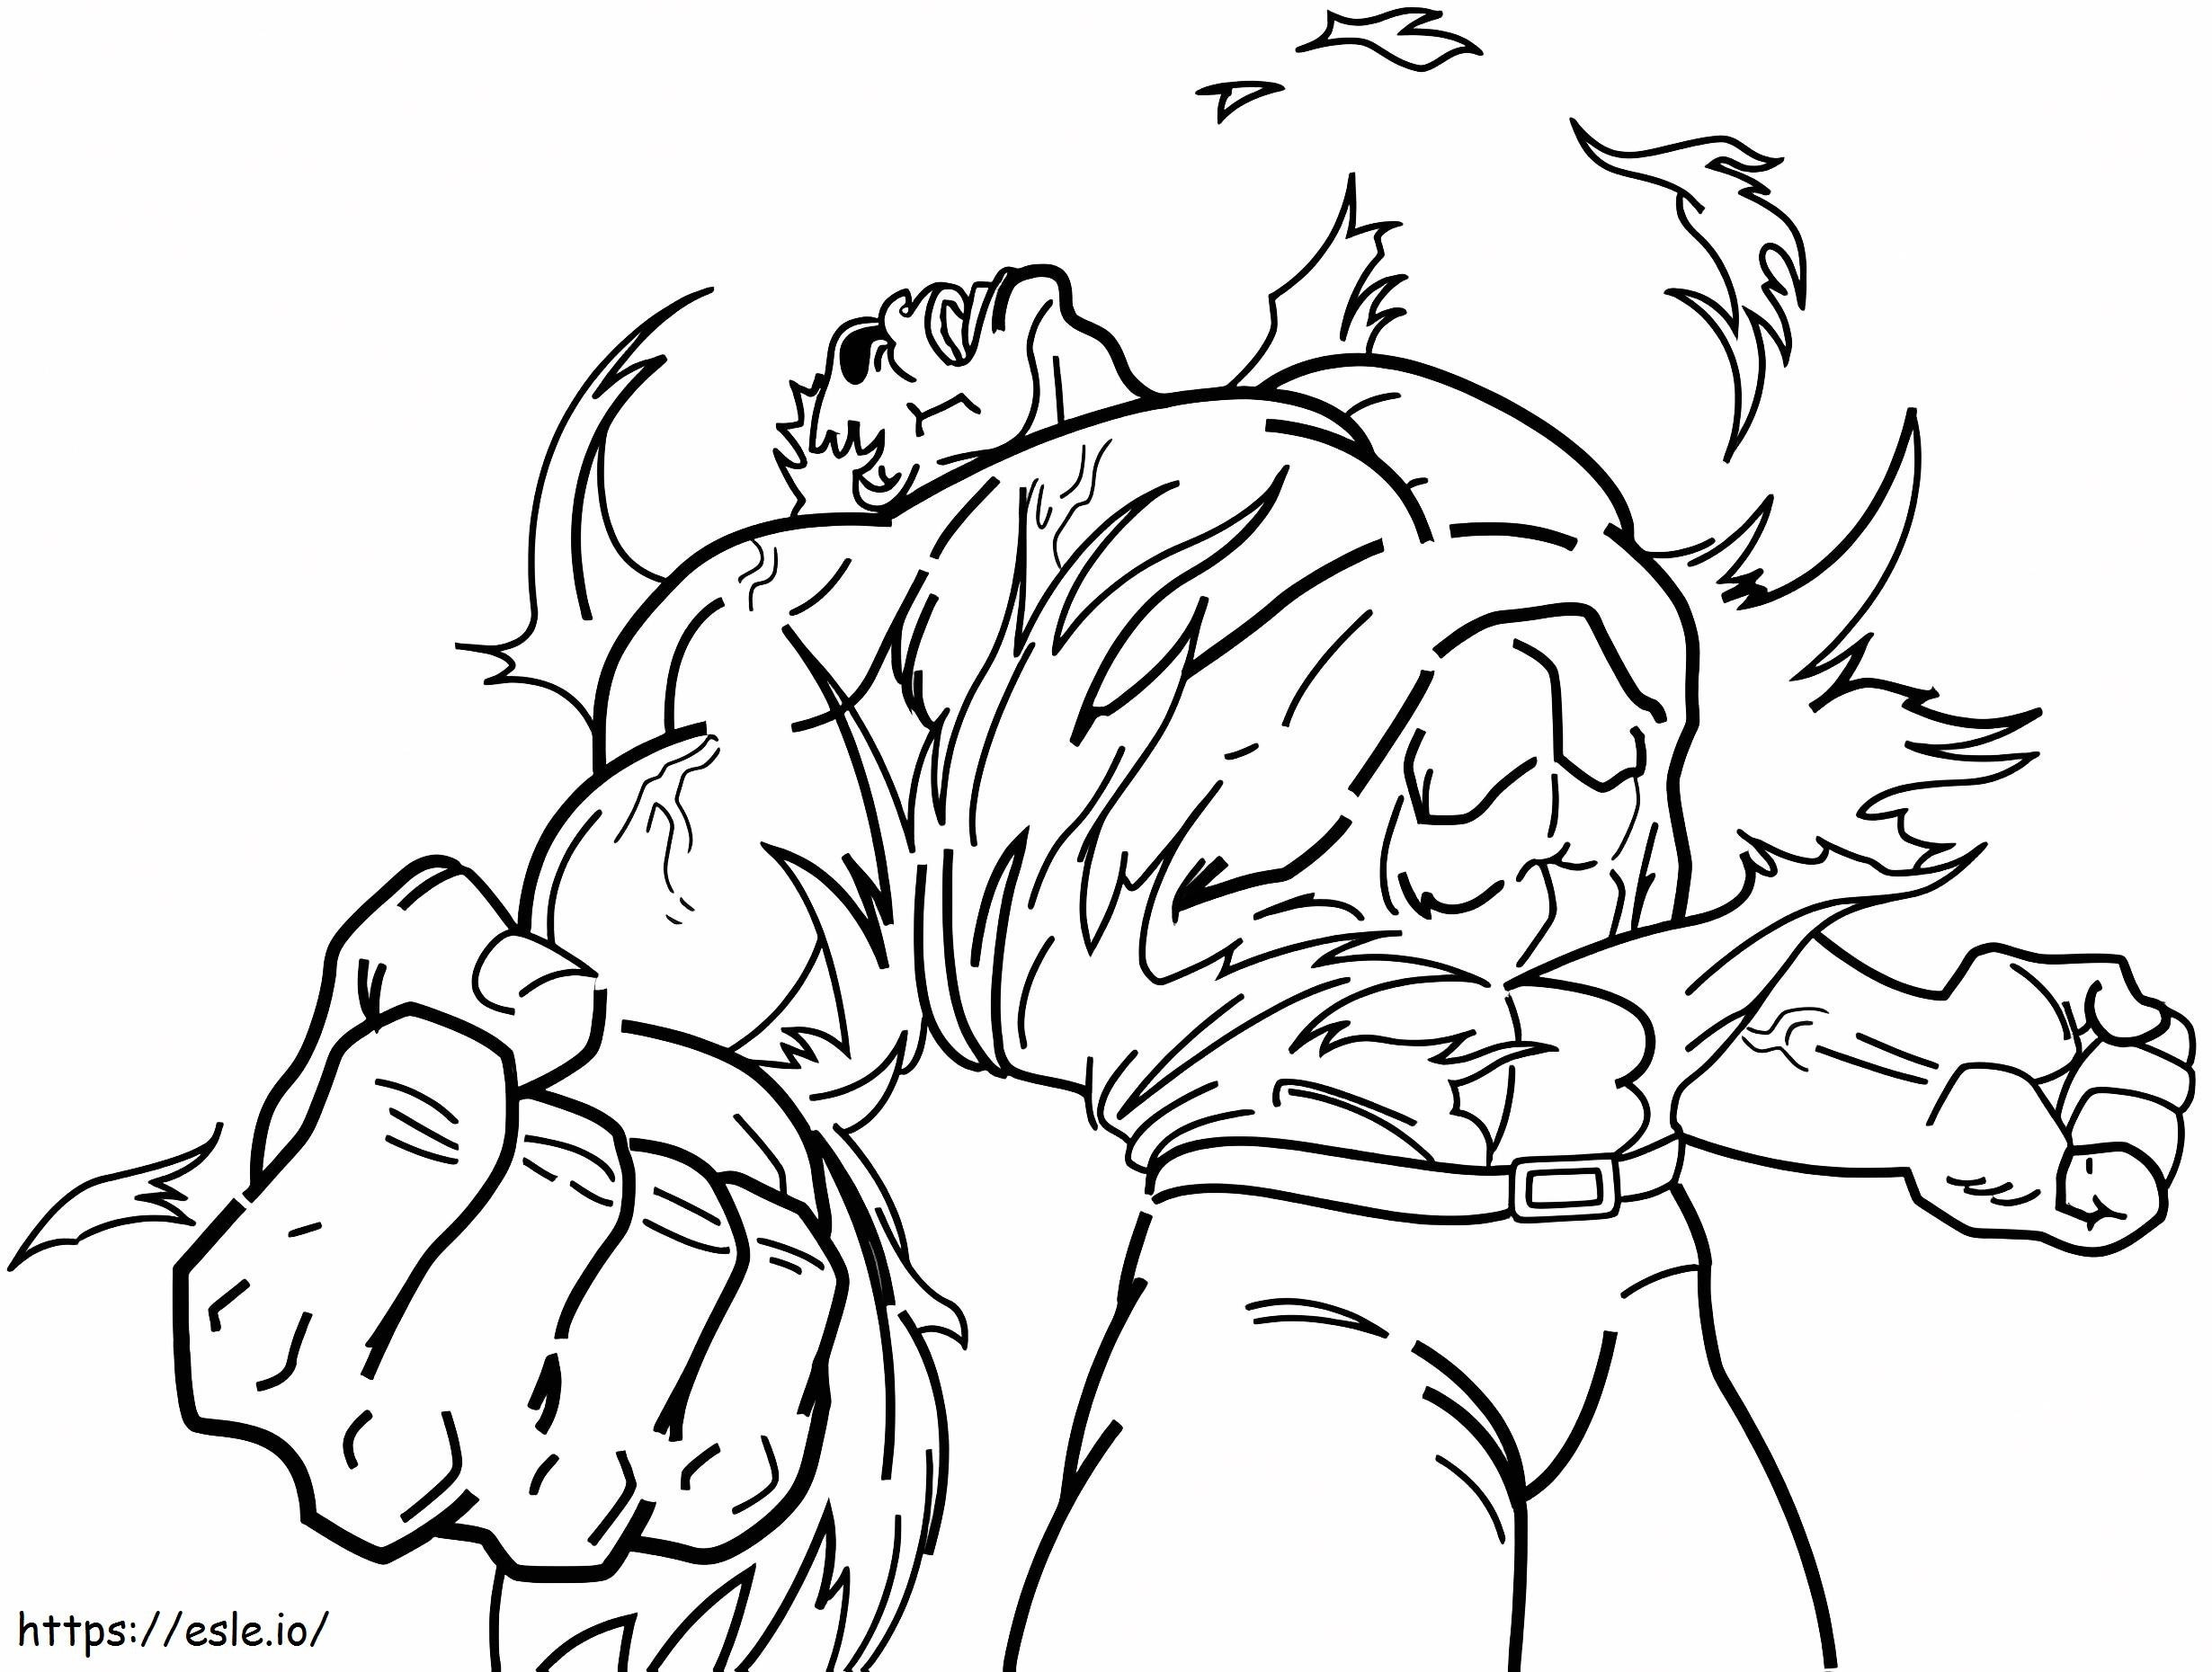 Hulk-Transformation ausmalbilder